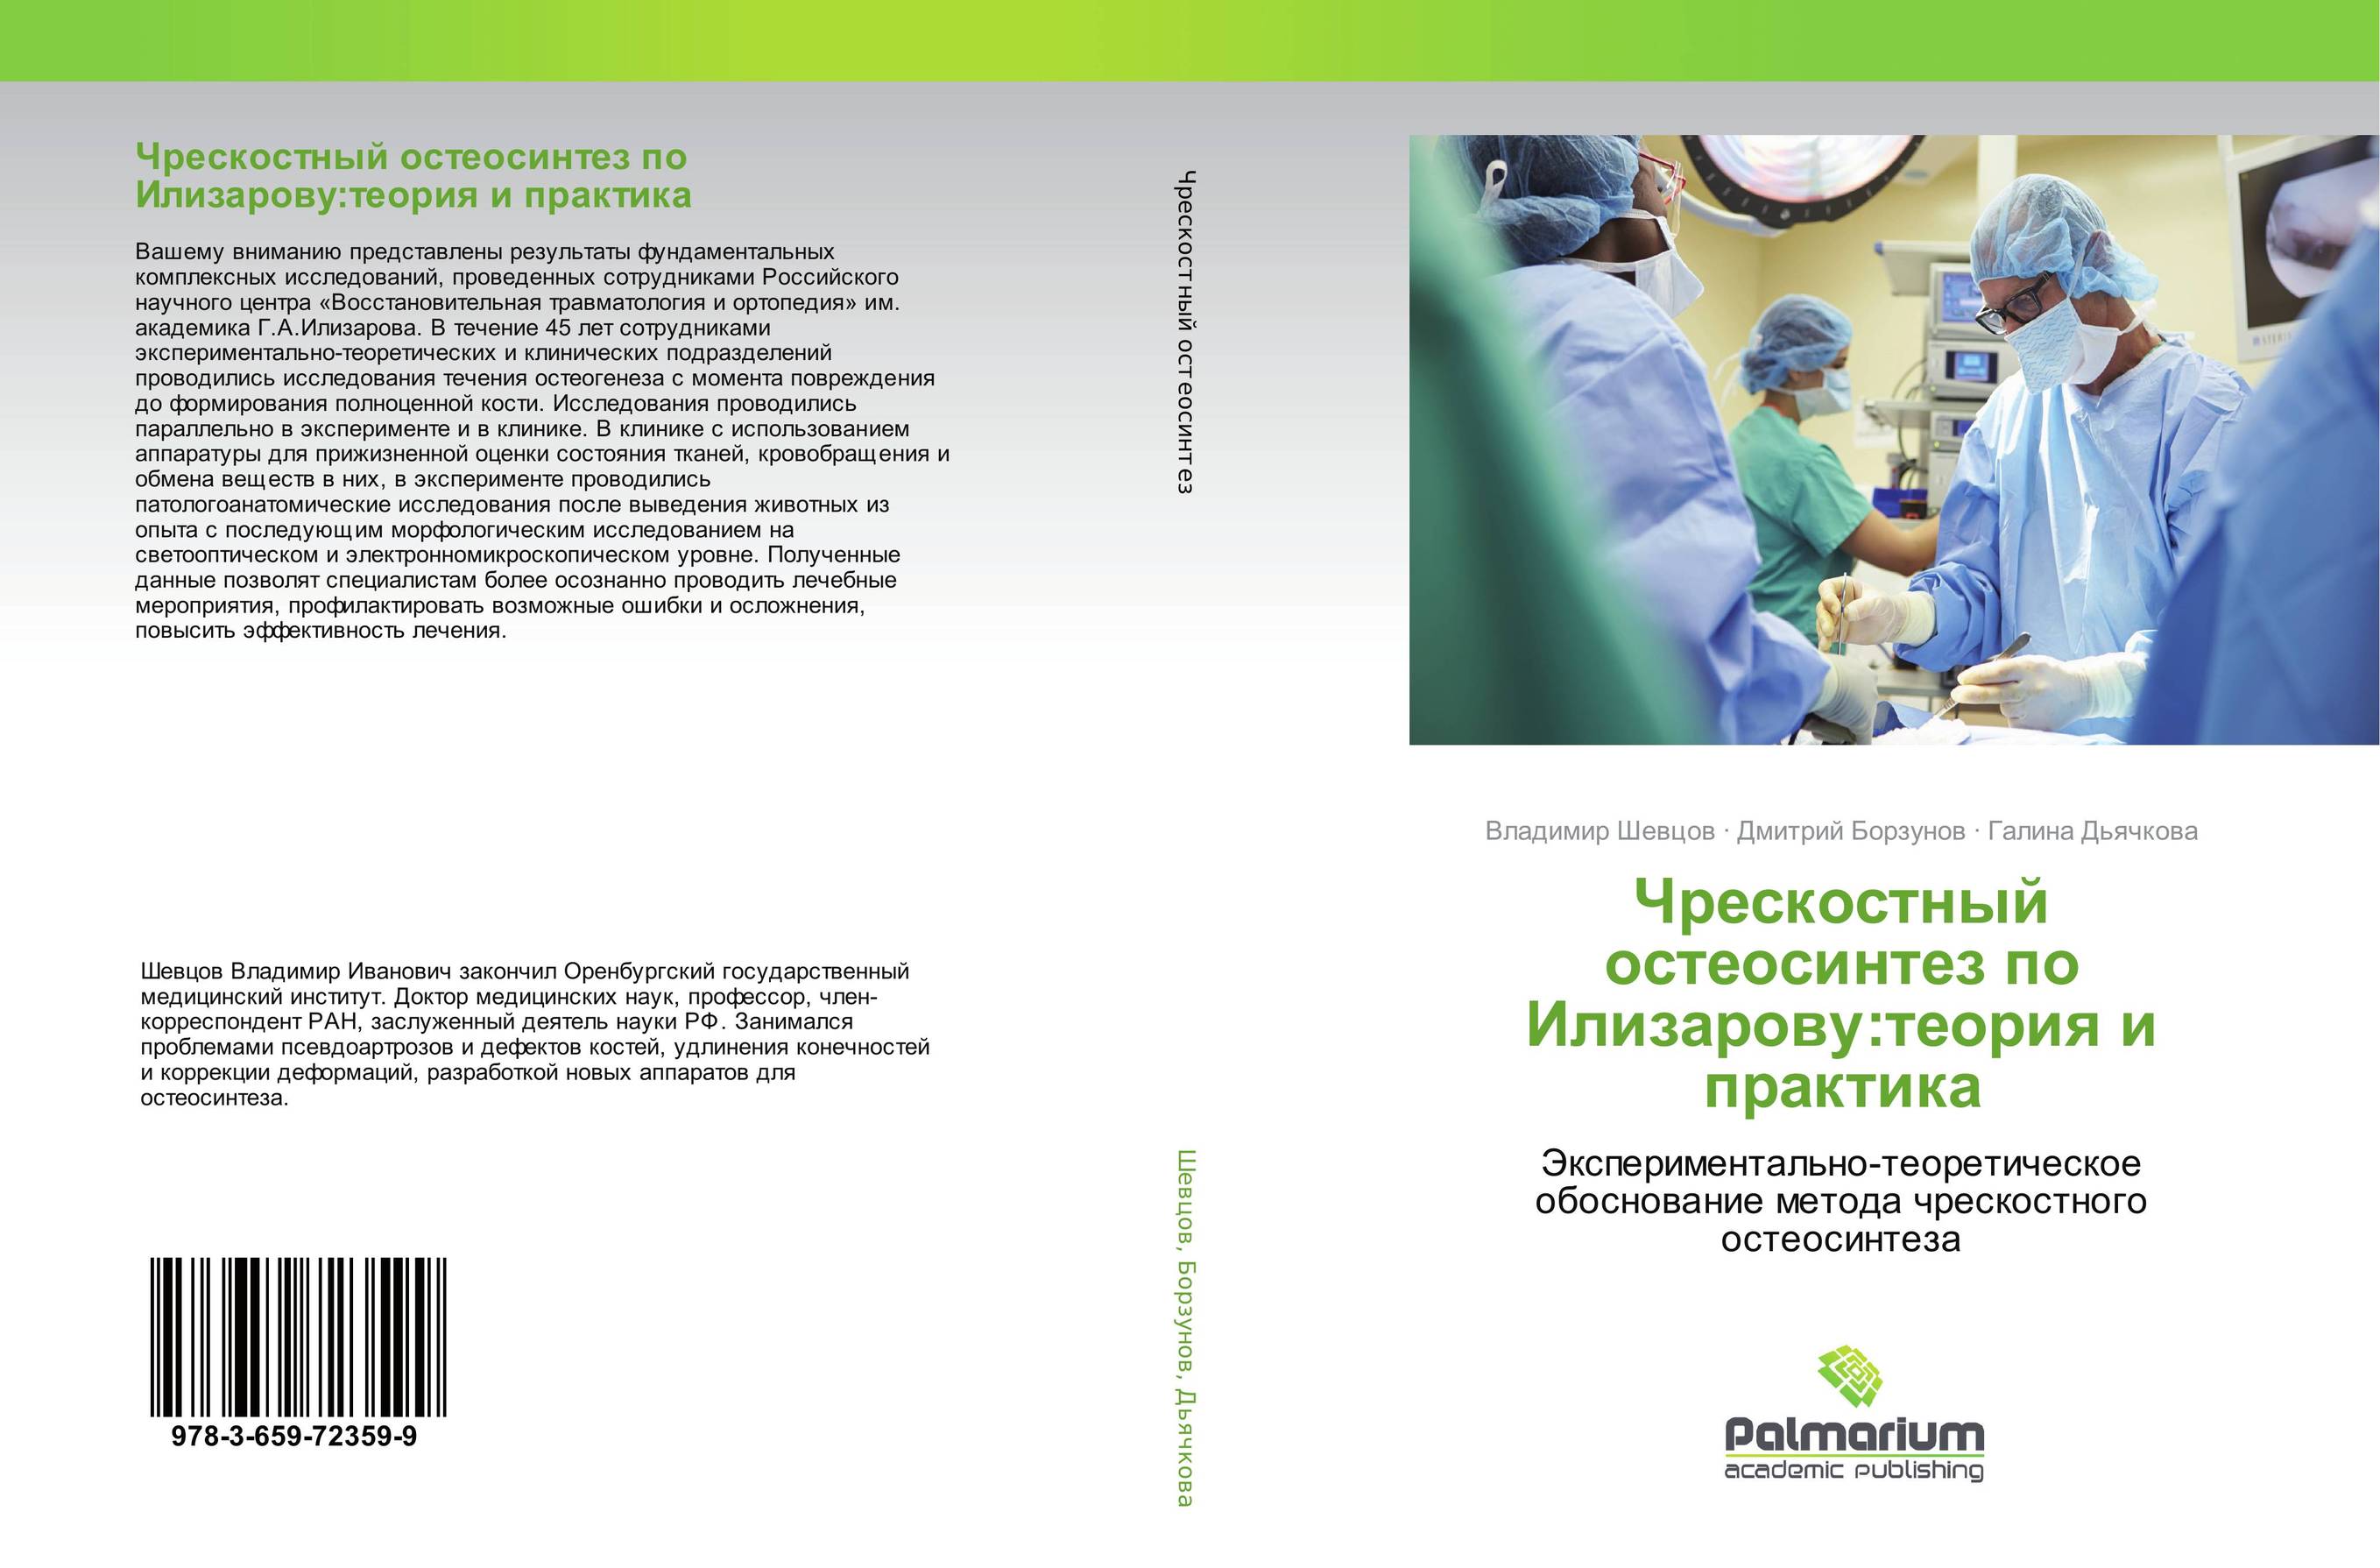 
        Чрескостный остеосинтез по Илизарову:теория и практика. Экспериментально-теоретическое обоснование метода чрескостного остеосинтеза.
      